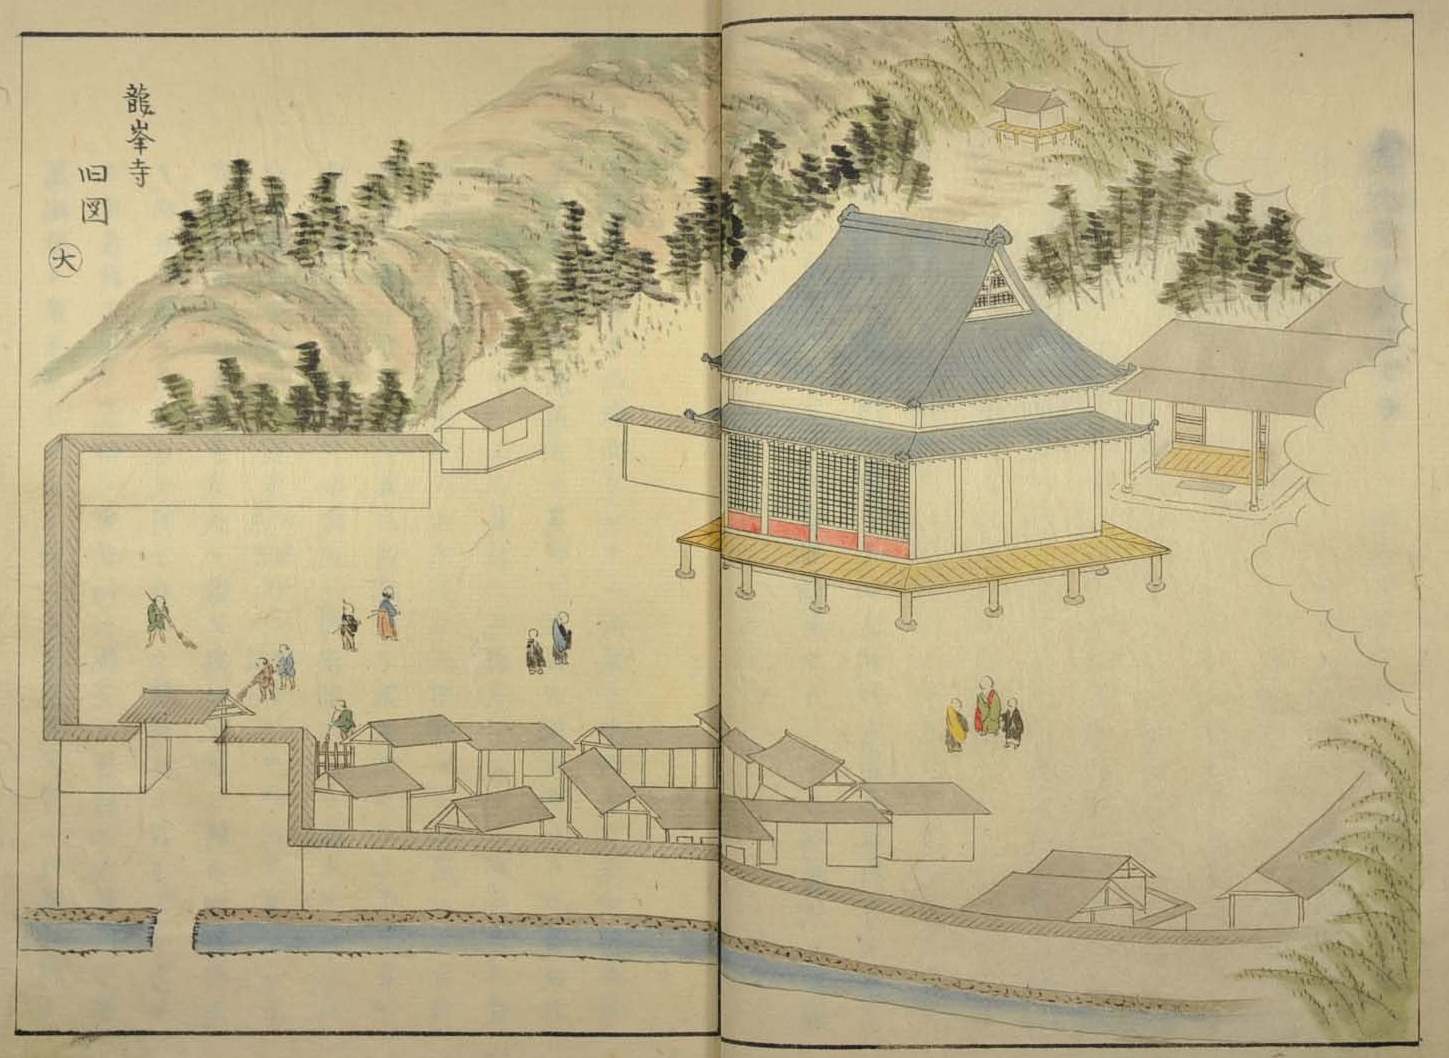 興禅寺's image 2